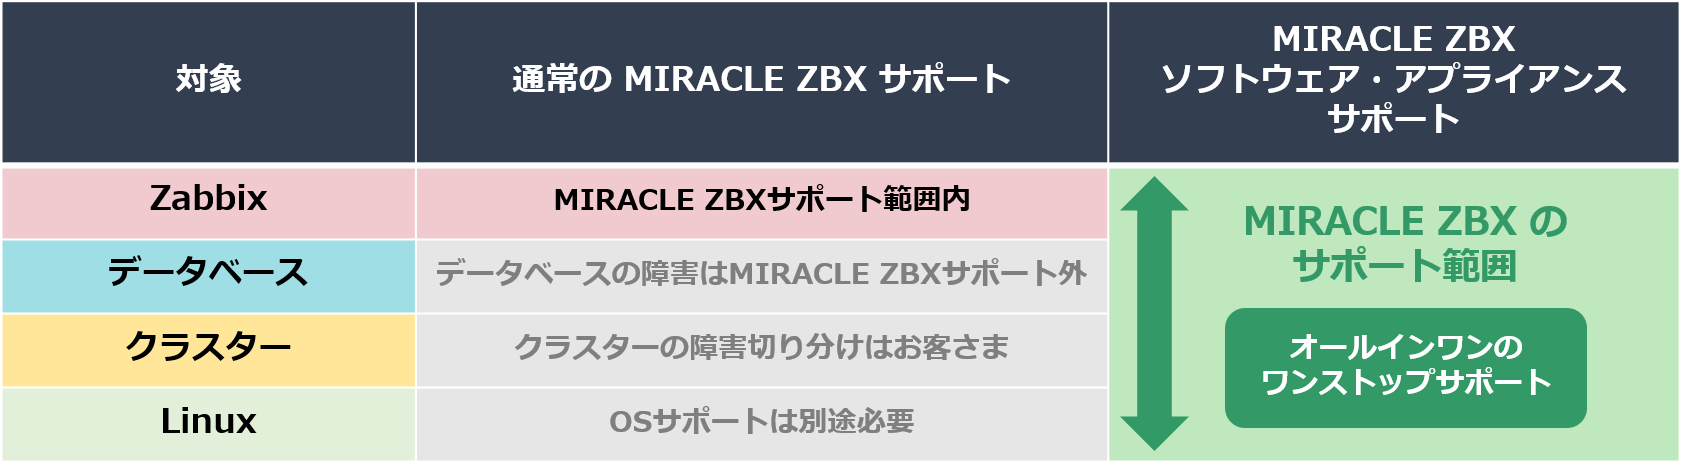 MIRACLE ZBX のワンストップサポート 